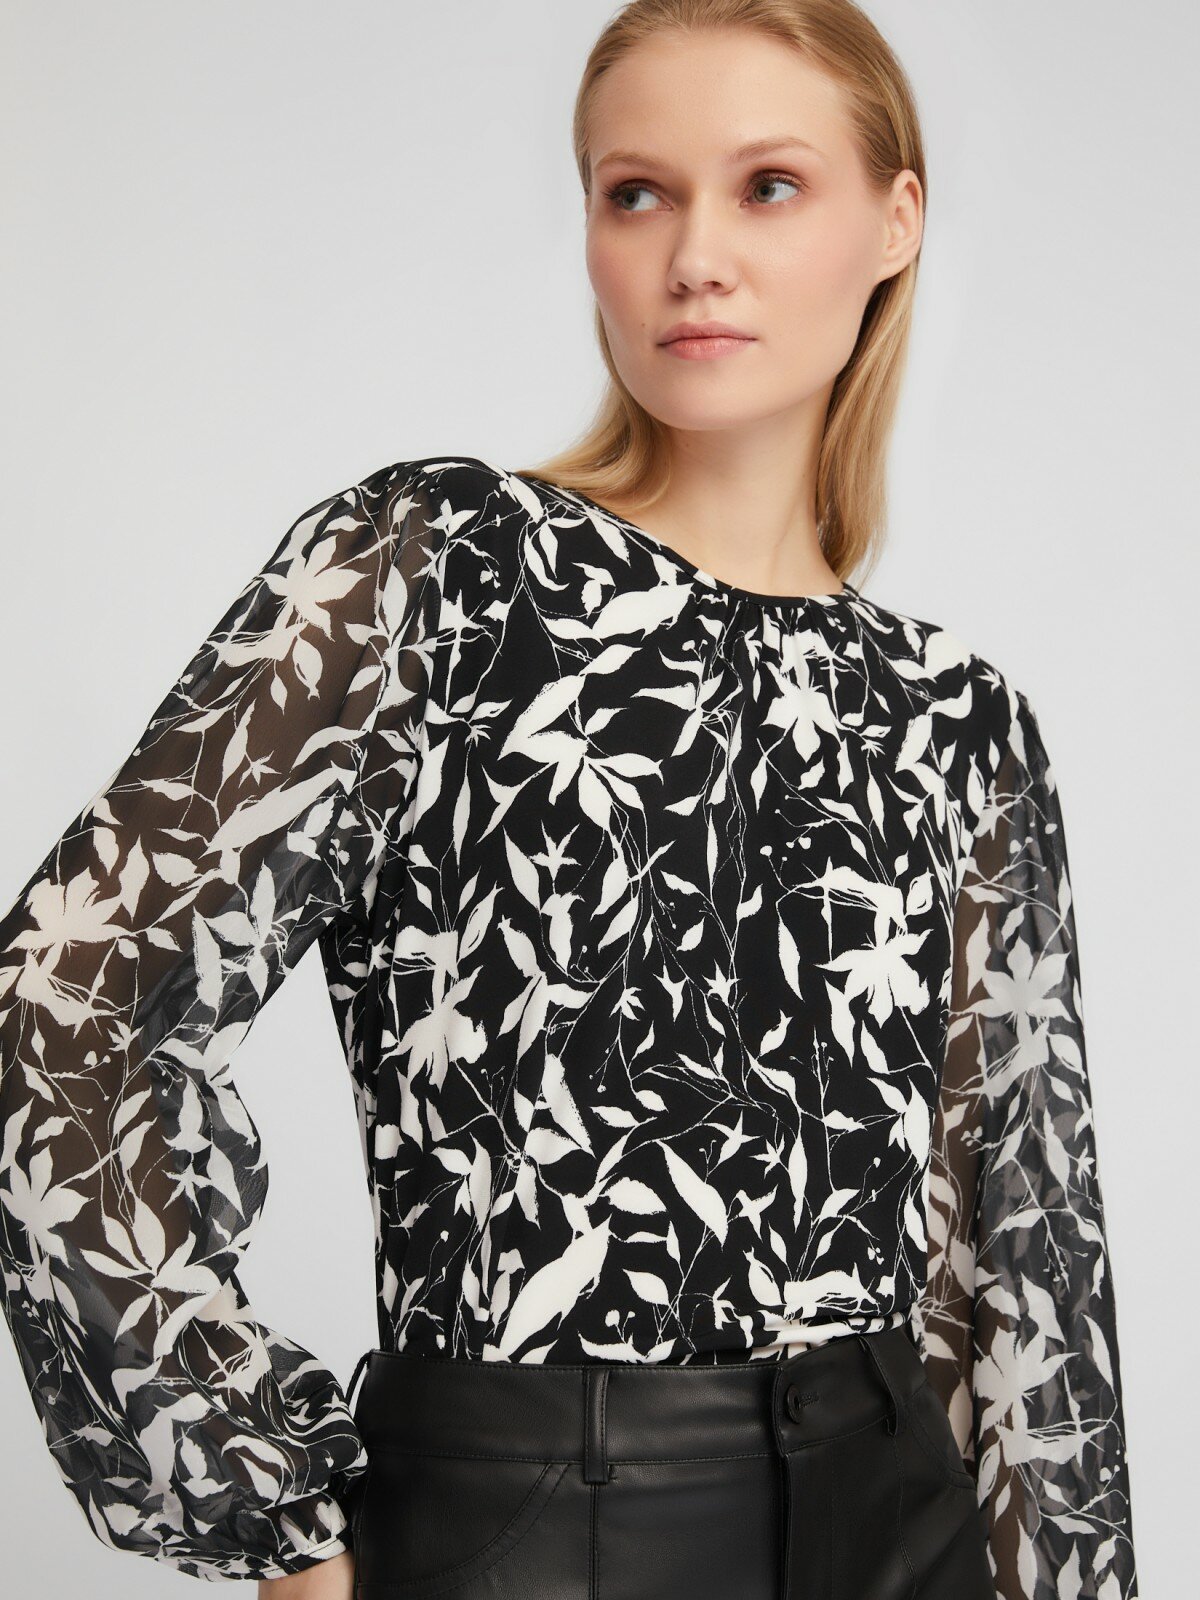 Трикотажная блузка с цветочным принтом и акцентом на рукавах цвет Черный размер M